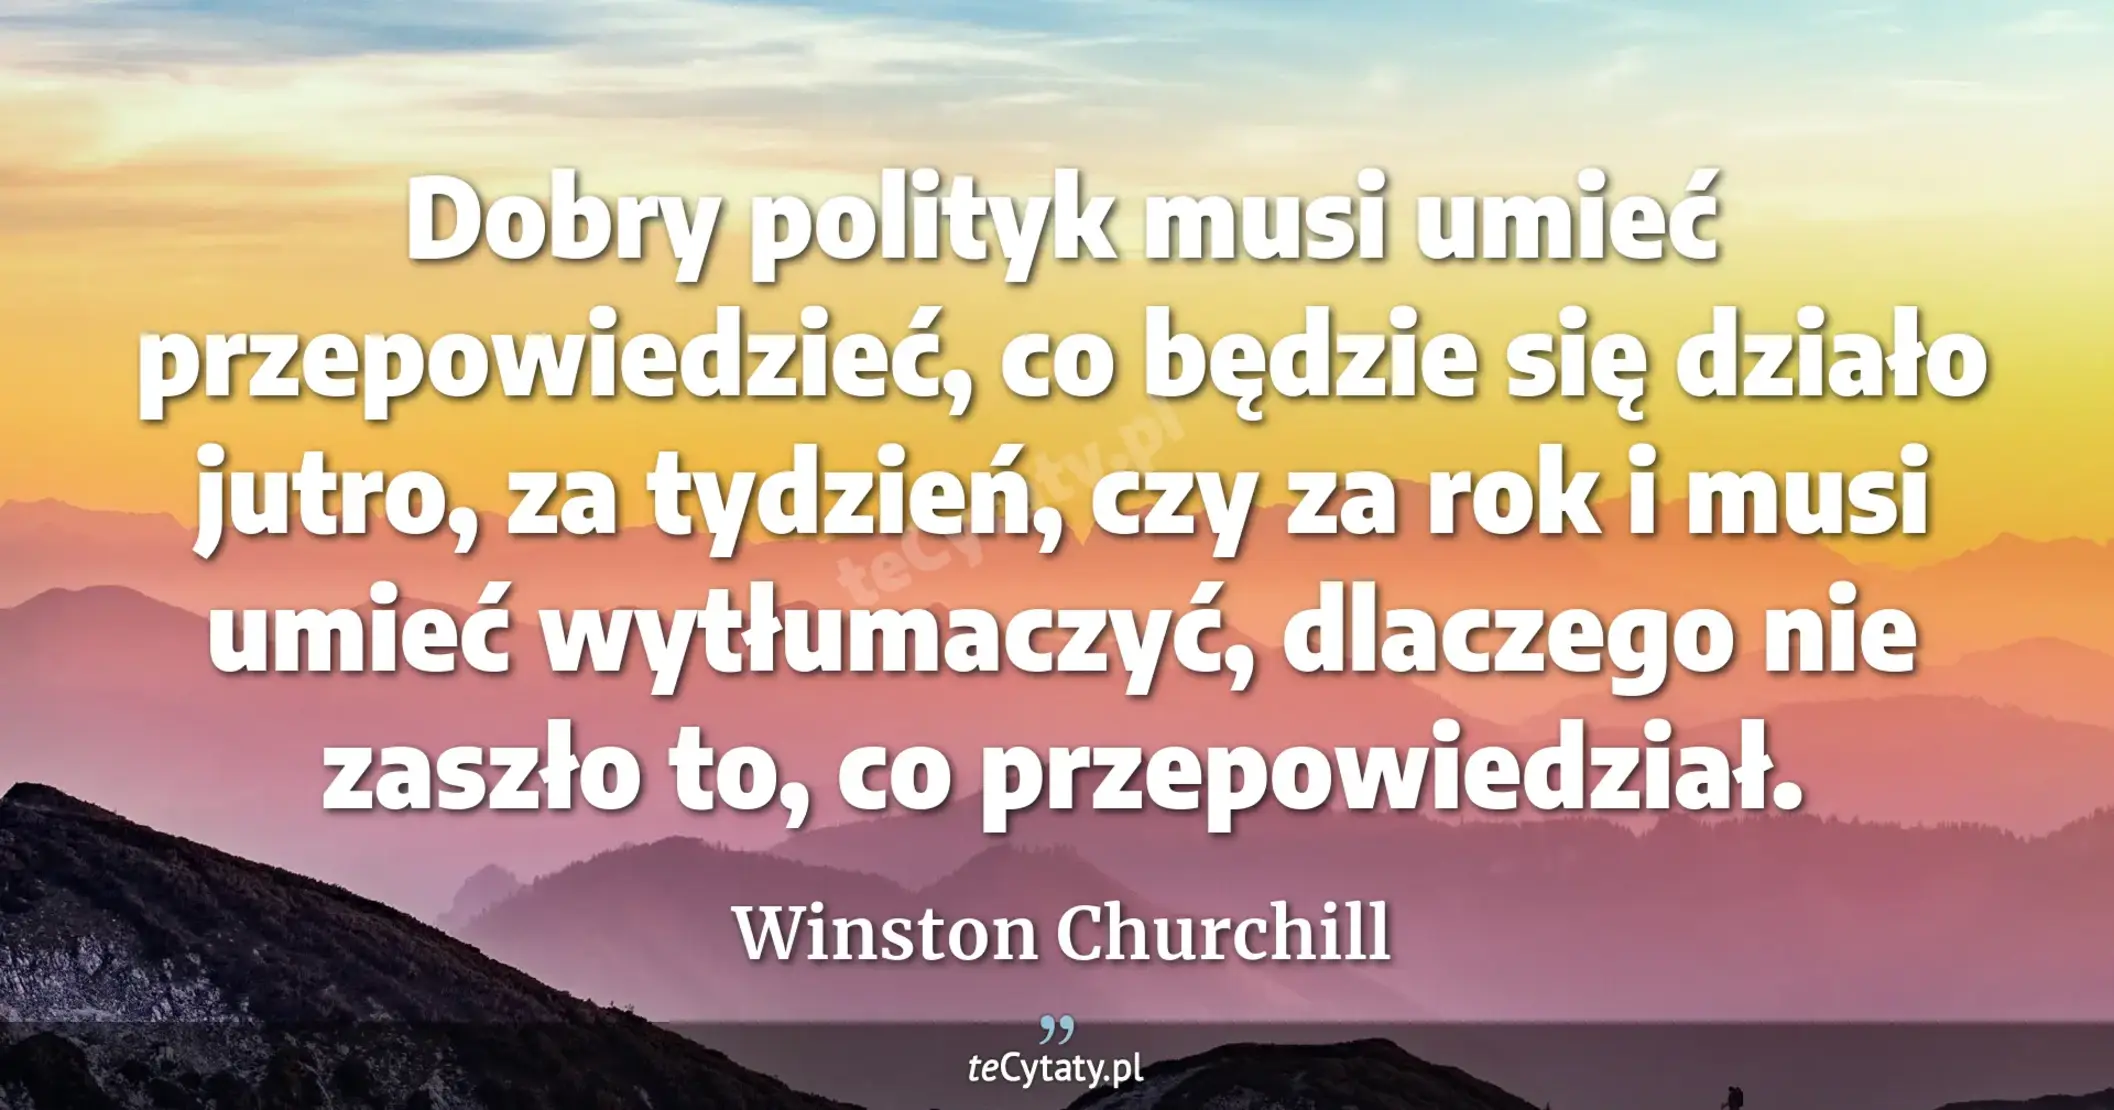 Dobry polityk musi umieć przepowiedzieć, co będzie się działo jutro, za tydzień, czy za rok i musi umieć wytłumaczyć, dlaczego nie zaszło to, co przepowiedział. - Winston Churchill